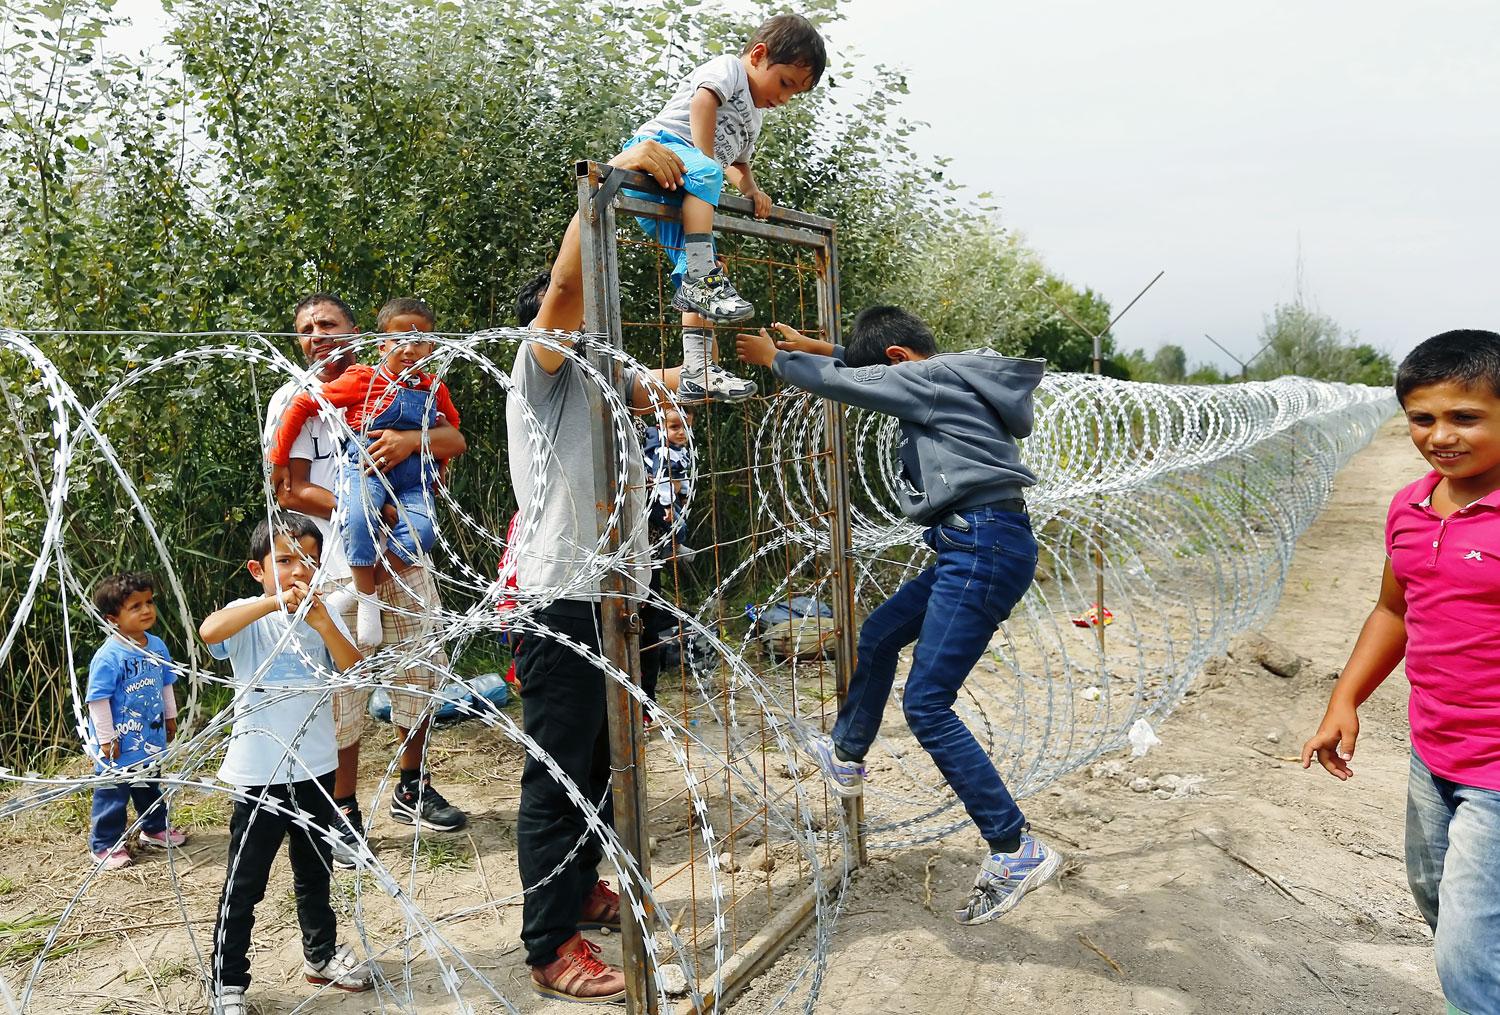 A szírek útja a magyar határzáron át vezet Németországba. A kép kedden készült